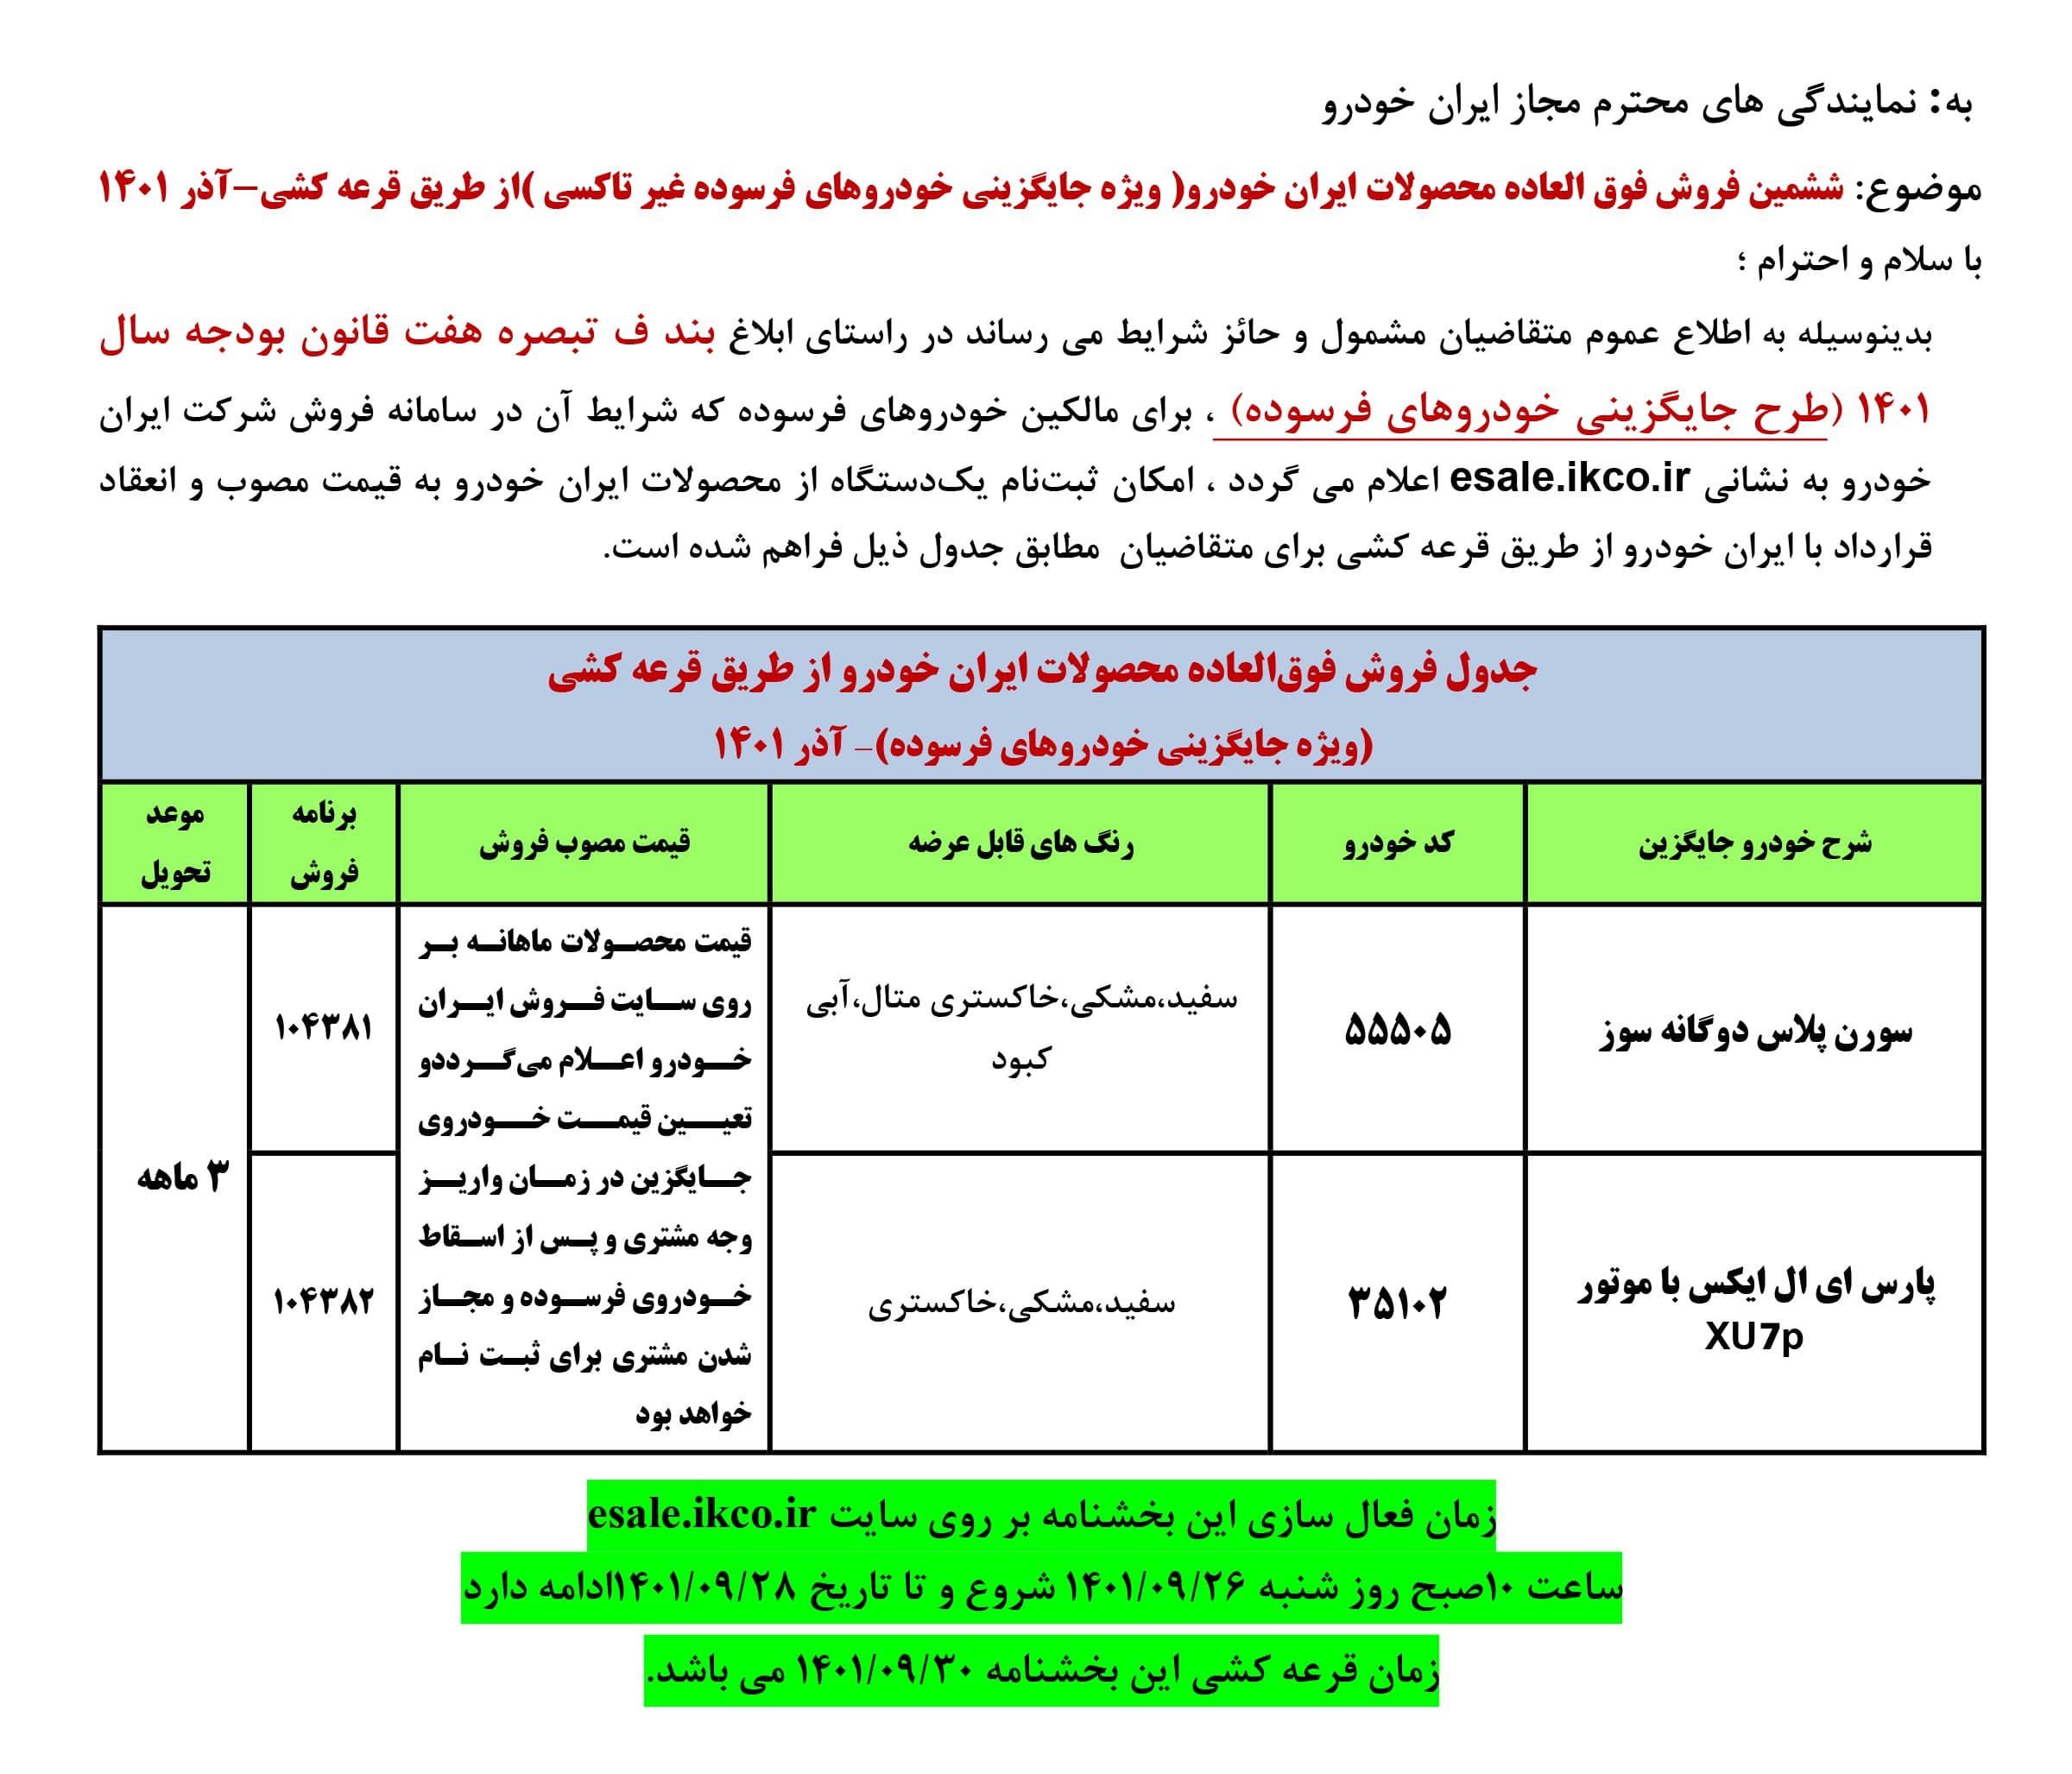 فروش فوق العاده ایران خودرو ویژه جایگزینی خودرو های فرسوده - ۲۶ الی ۲۸ آذر ۱۴۰۱